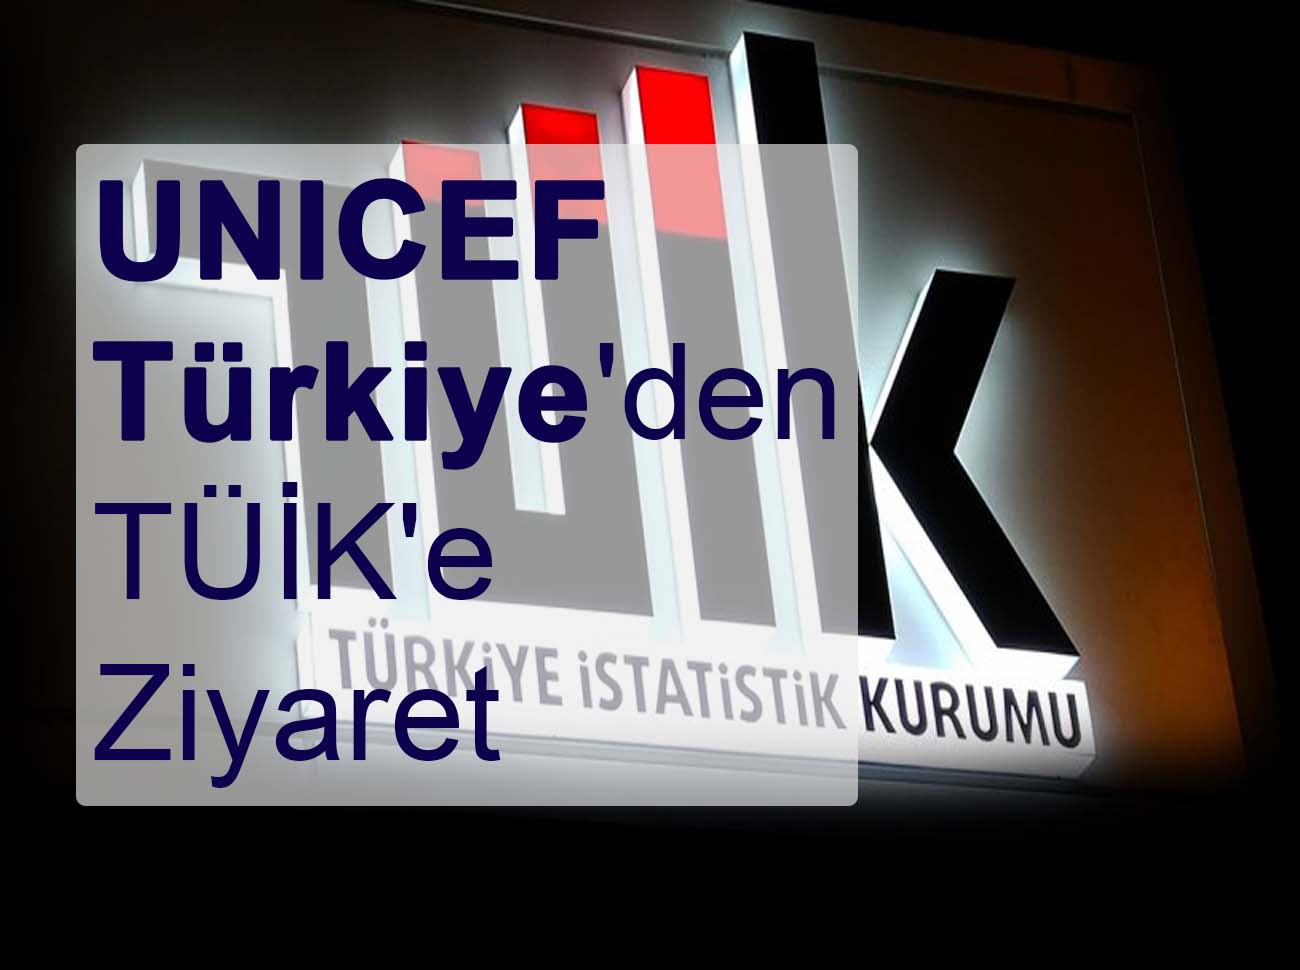 UNICEF Türkiyeden TÜİKe Ziyaret